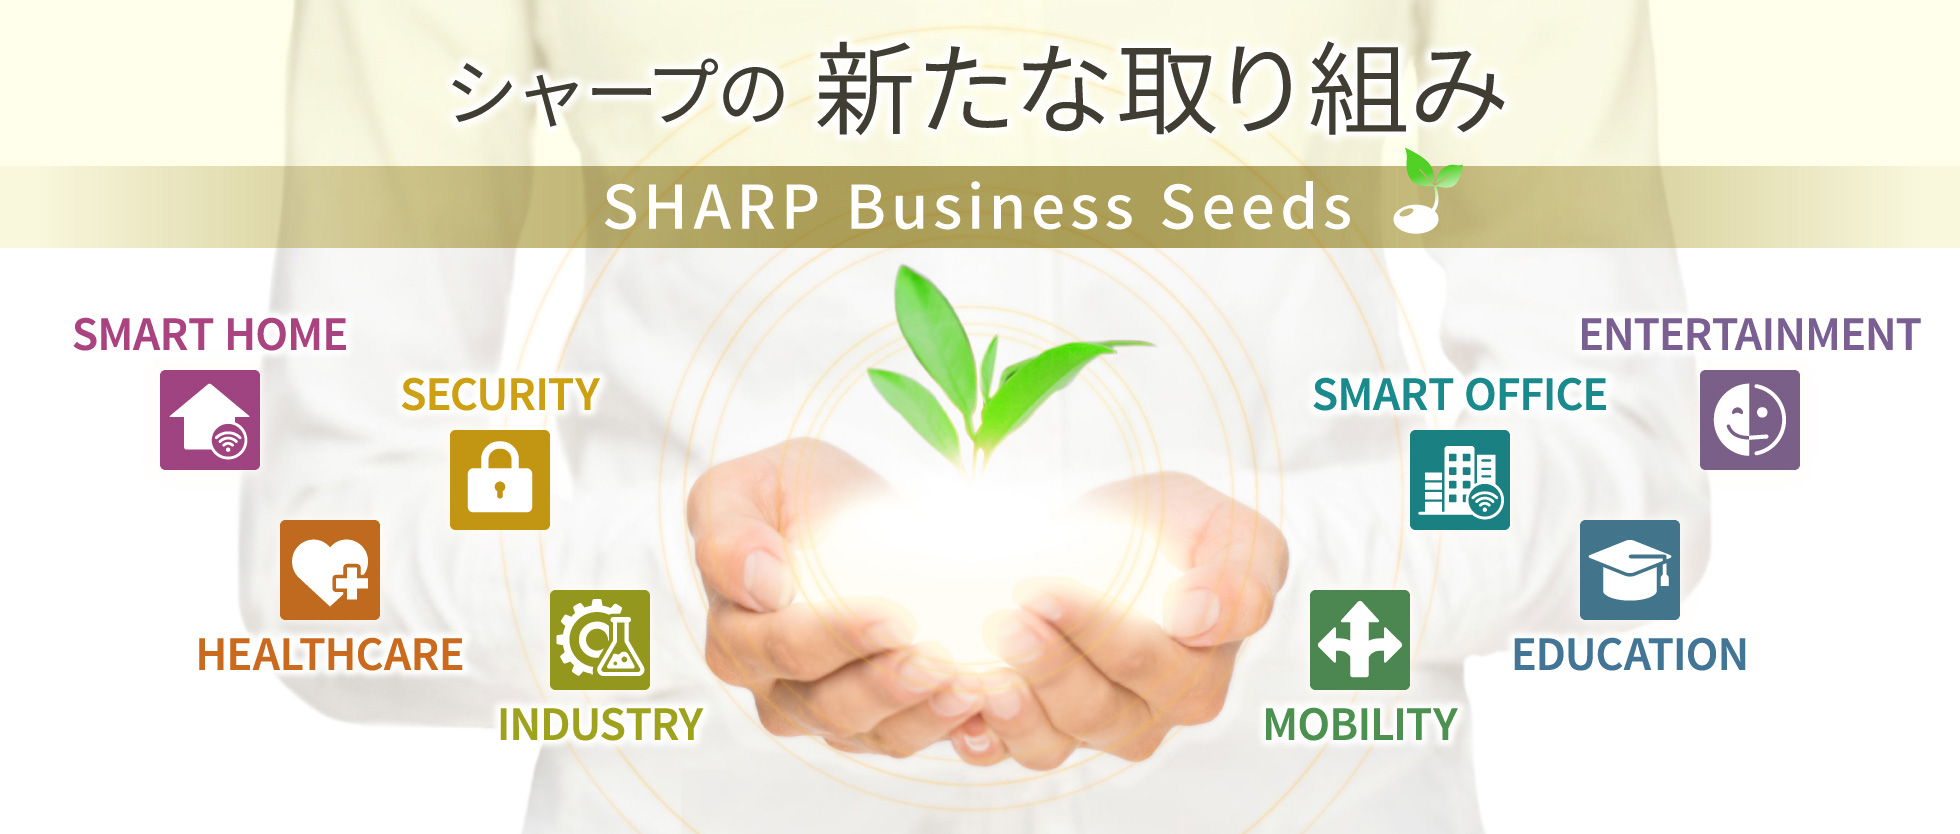 SHARP Business Seeds 